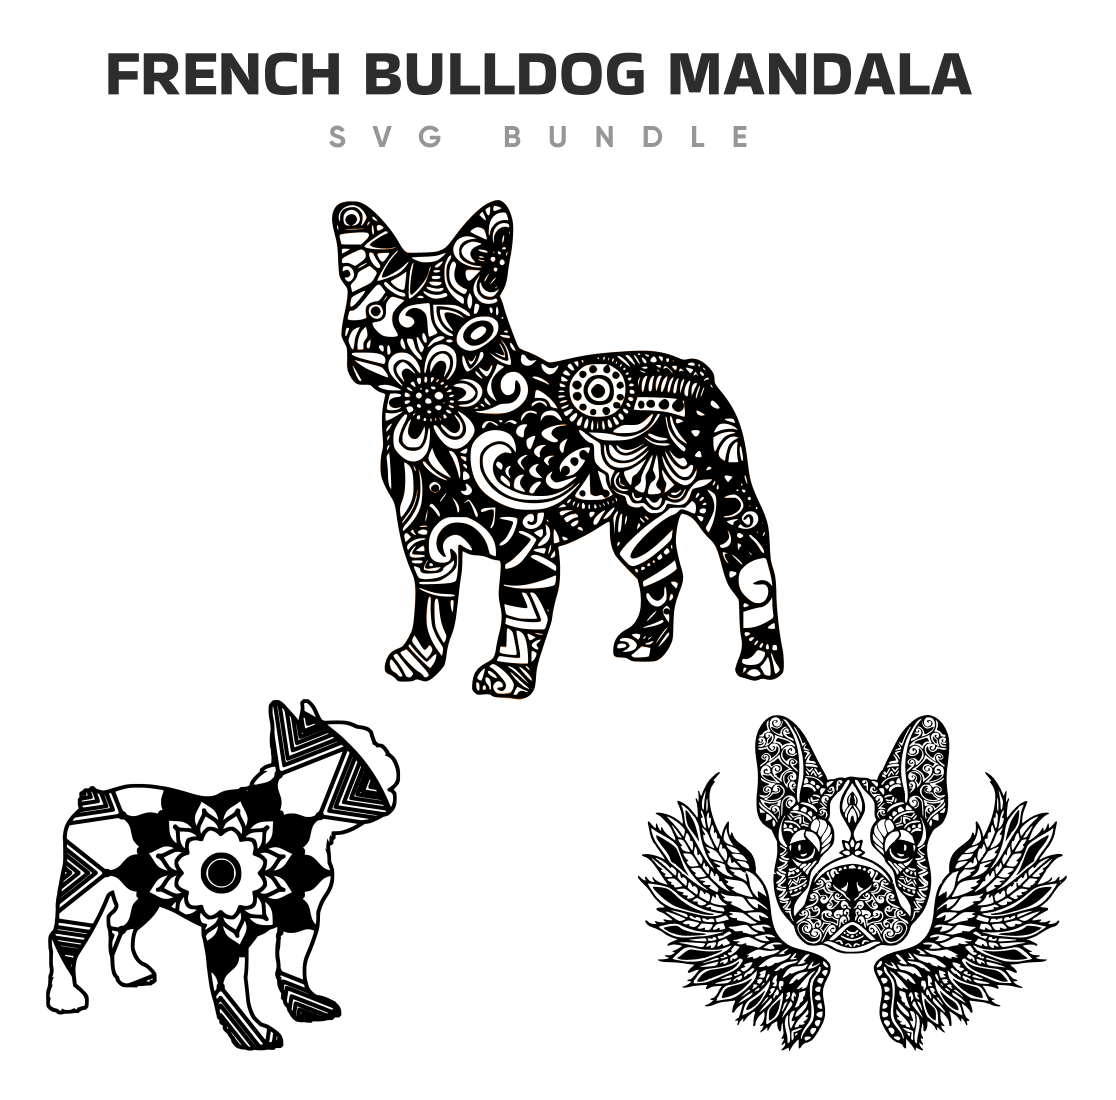 French bulldog mandala.